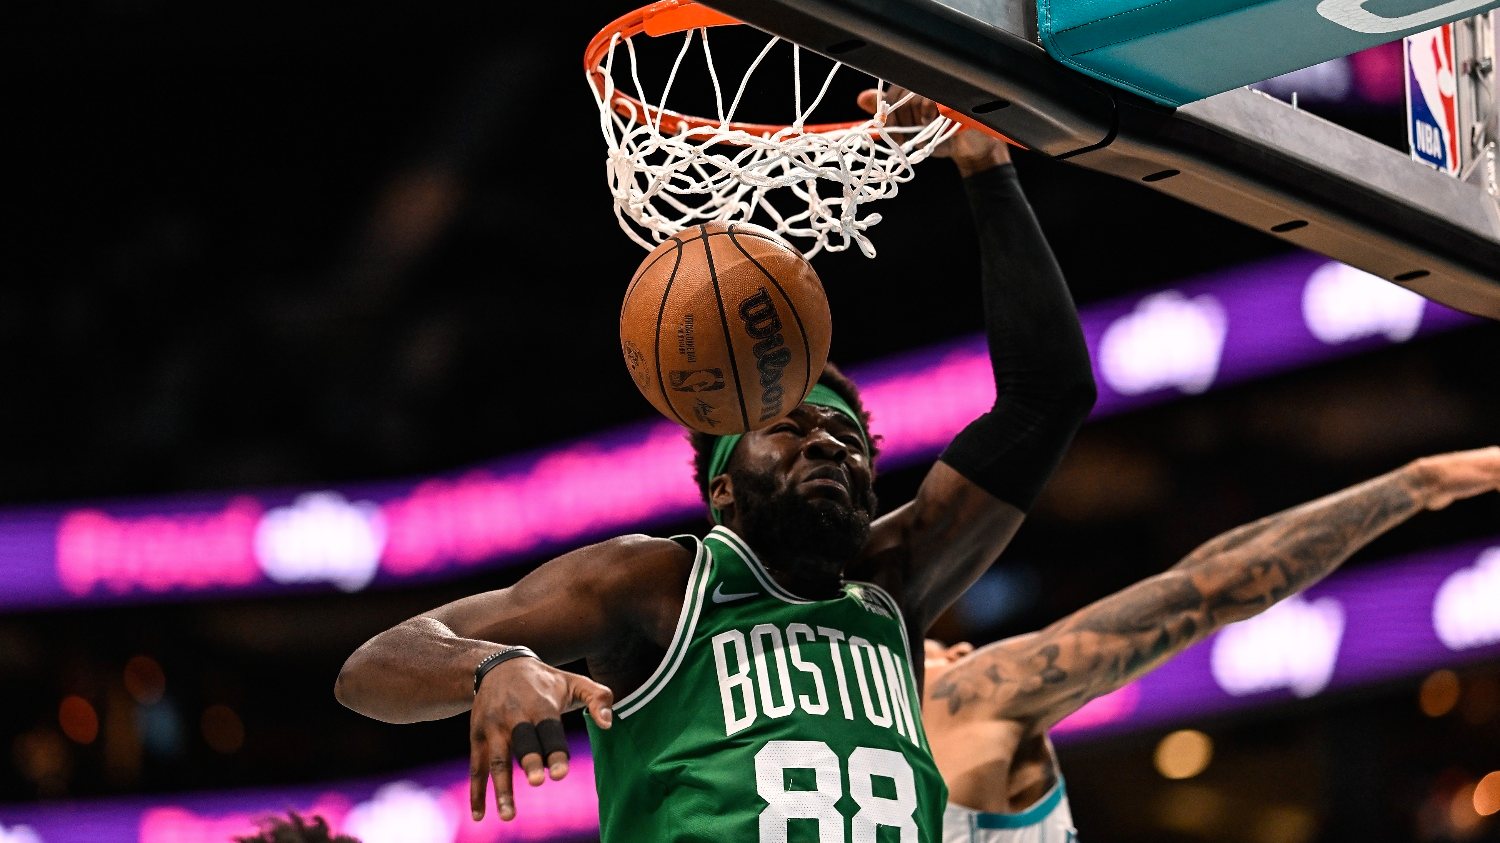 Neemias Queta esteve em destaque na vitória dos Boston Celtics frente aos Charlotte Hornets, ganhando sete ressaltos (cinco ofensivos) e fazendo dez pontos só no terceiro período